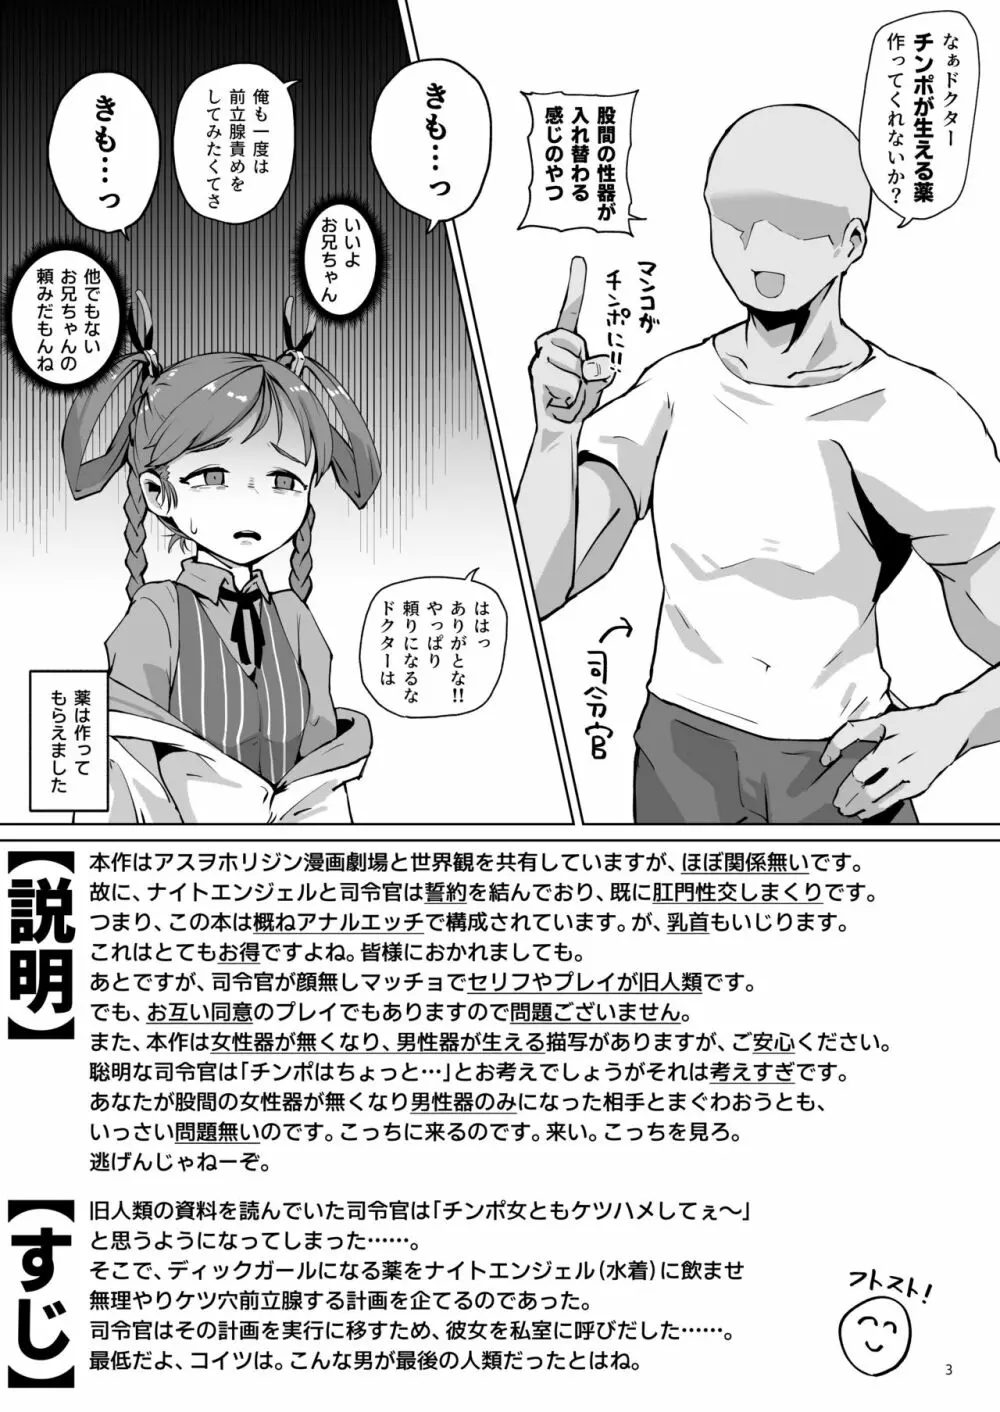 アスヲホリジン漫画劇場アナザー - page2